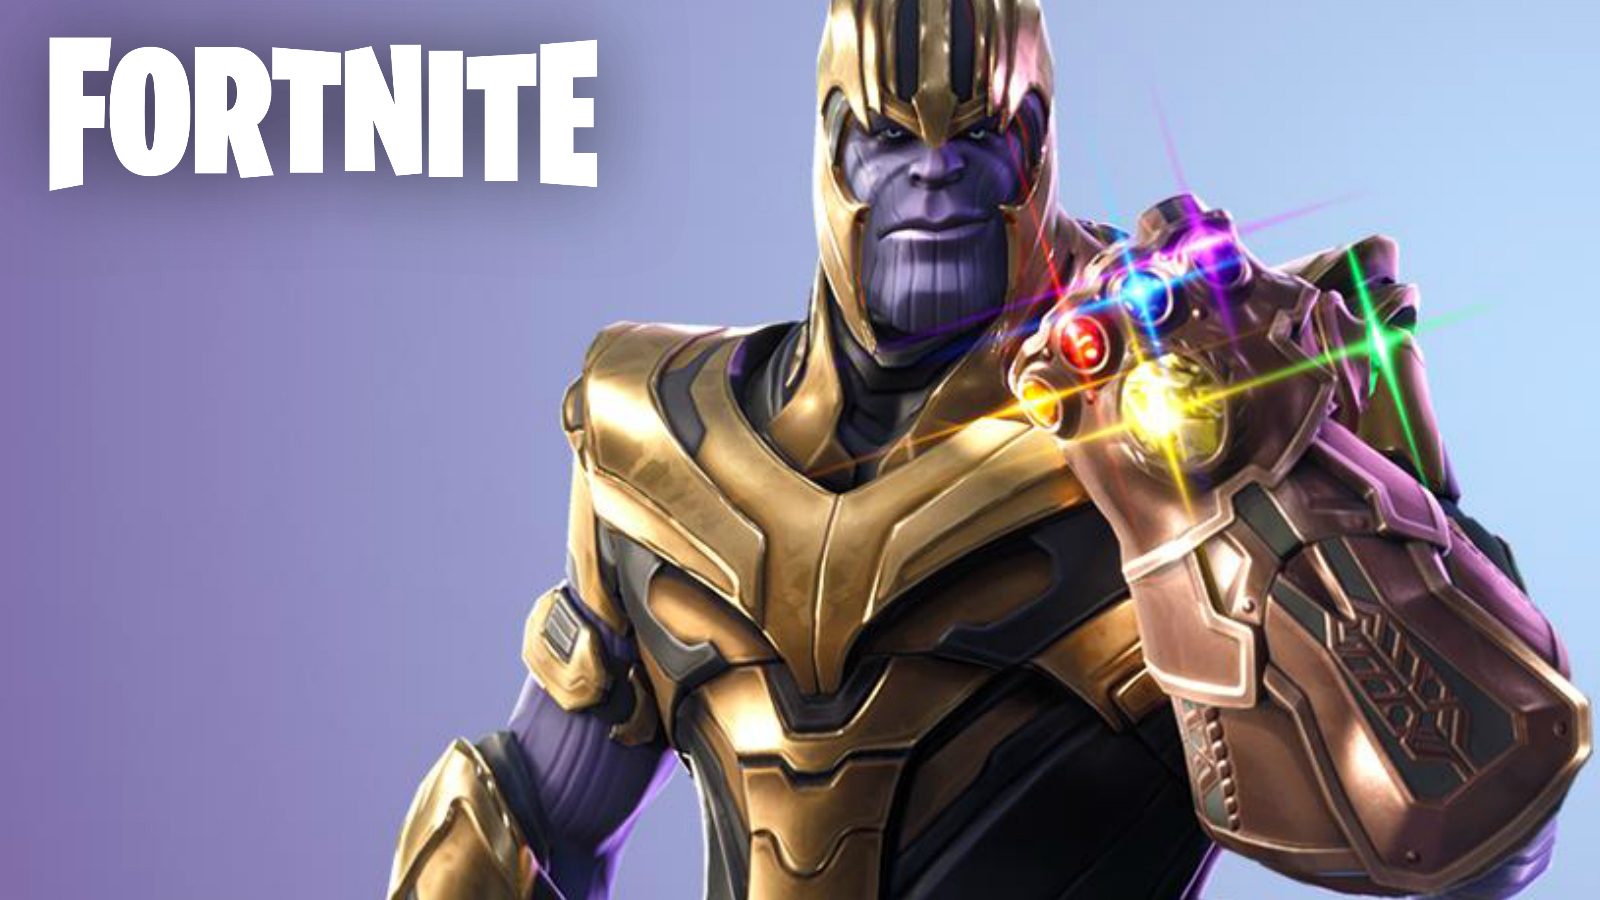 Fortnite X Avengers: Endgame Wallpapers